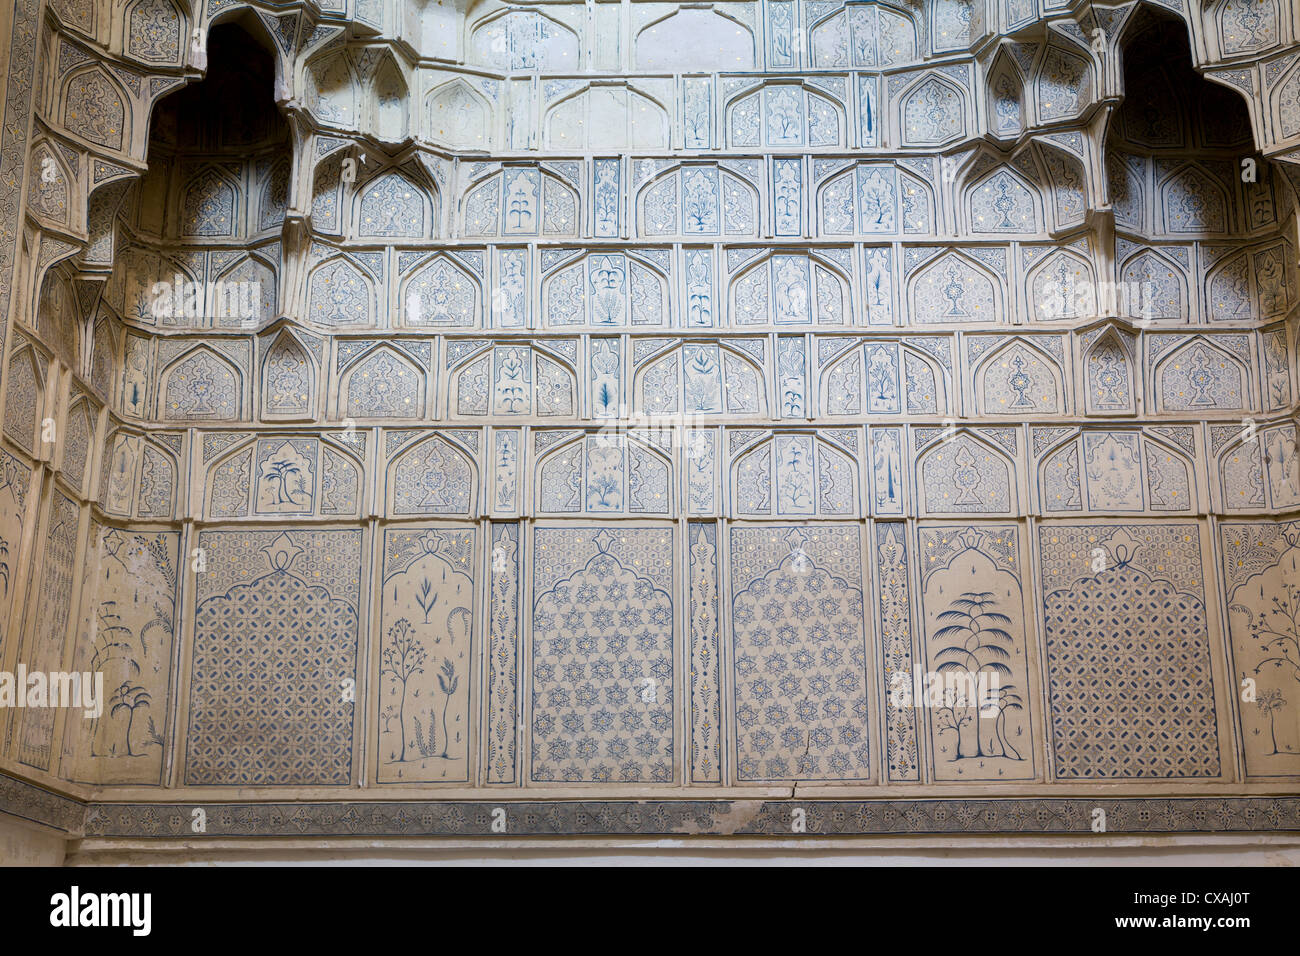 Détail de la peinture de la petite chambre lits jumeaux, d'un dôme mausolée à coupole, Shah-i Zinda, Samarqand, Ouzbékistan Banque D'Images